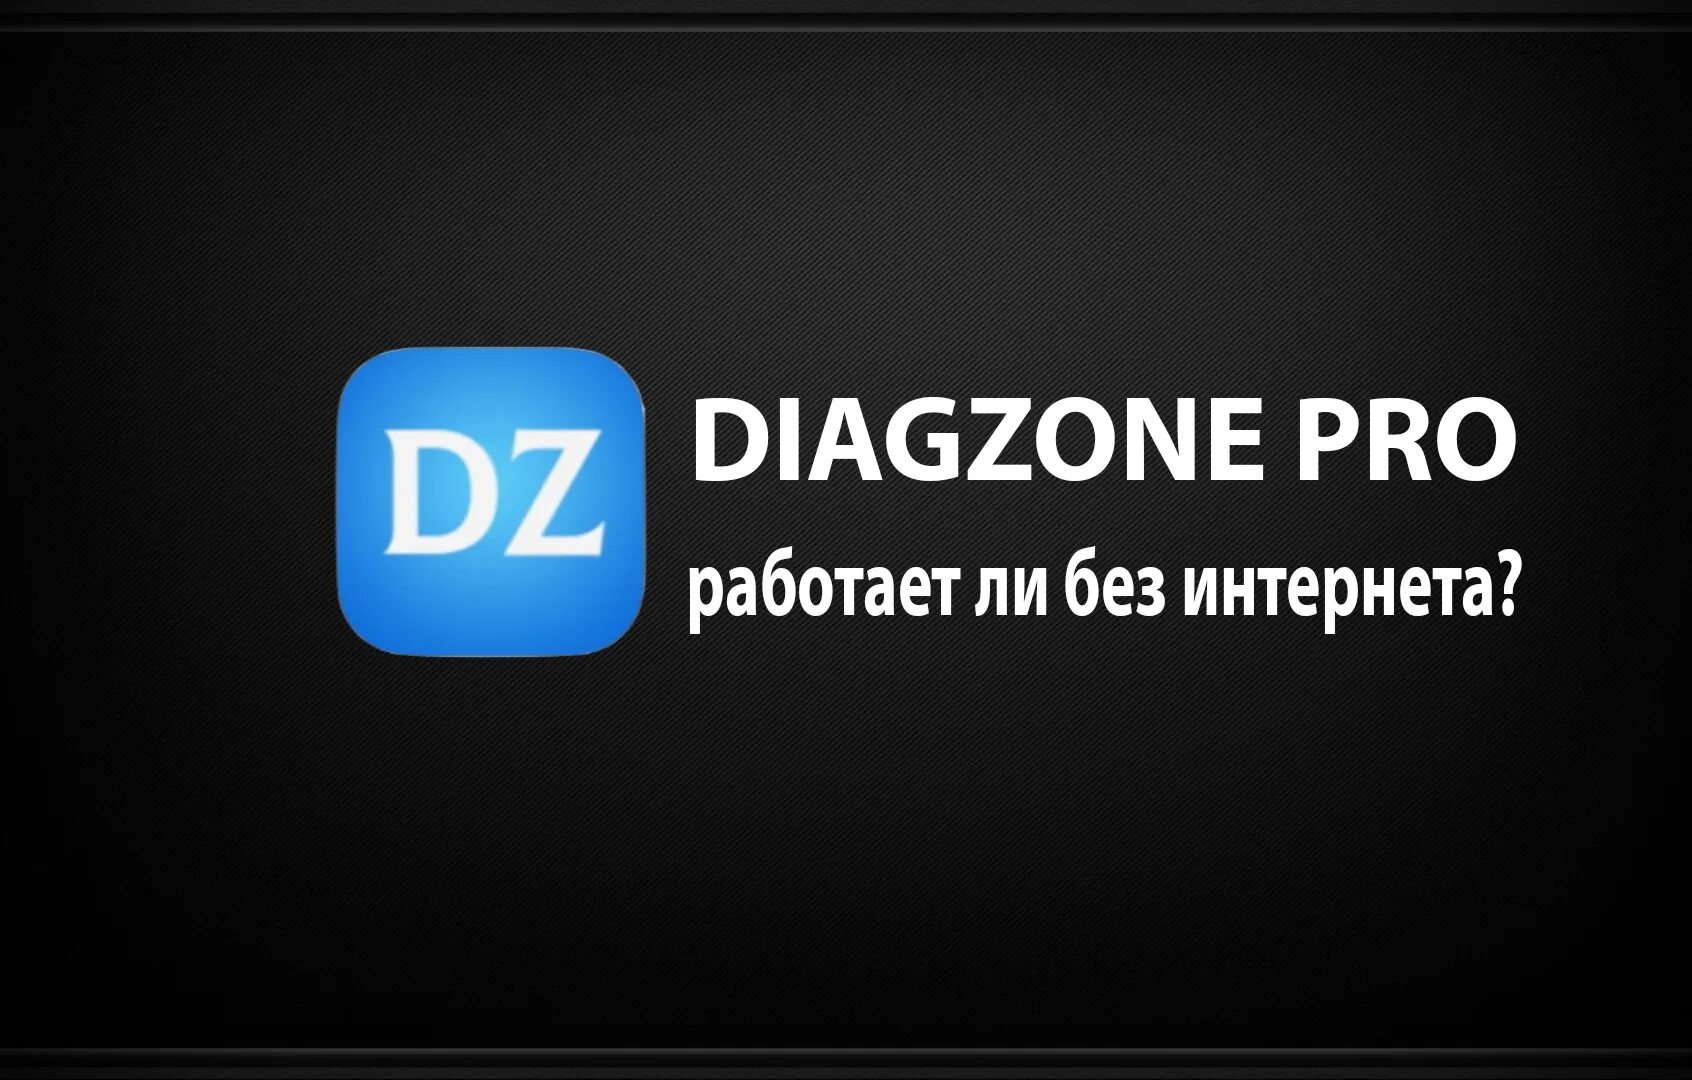 Diagzone pro 4pda